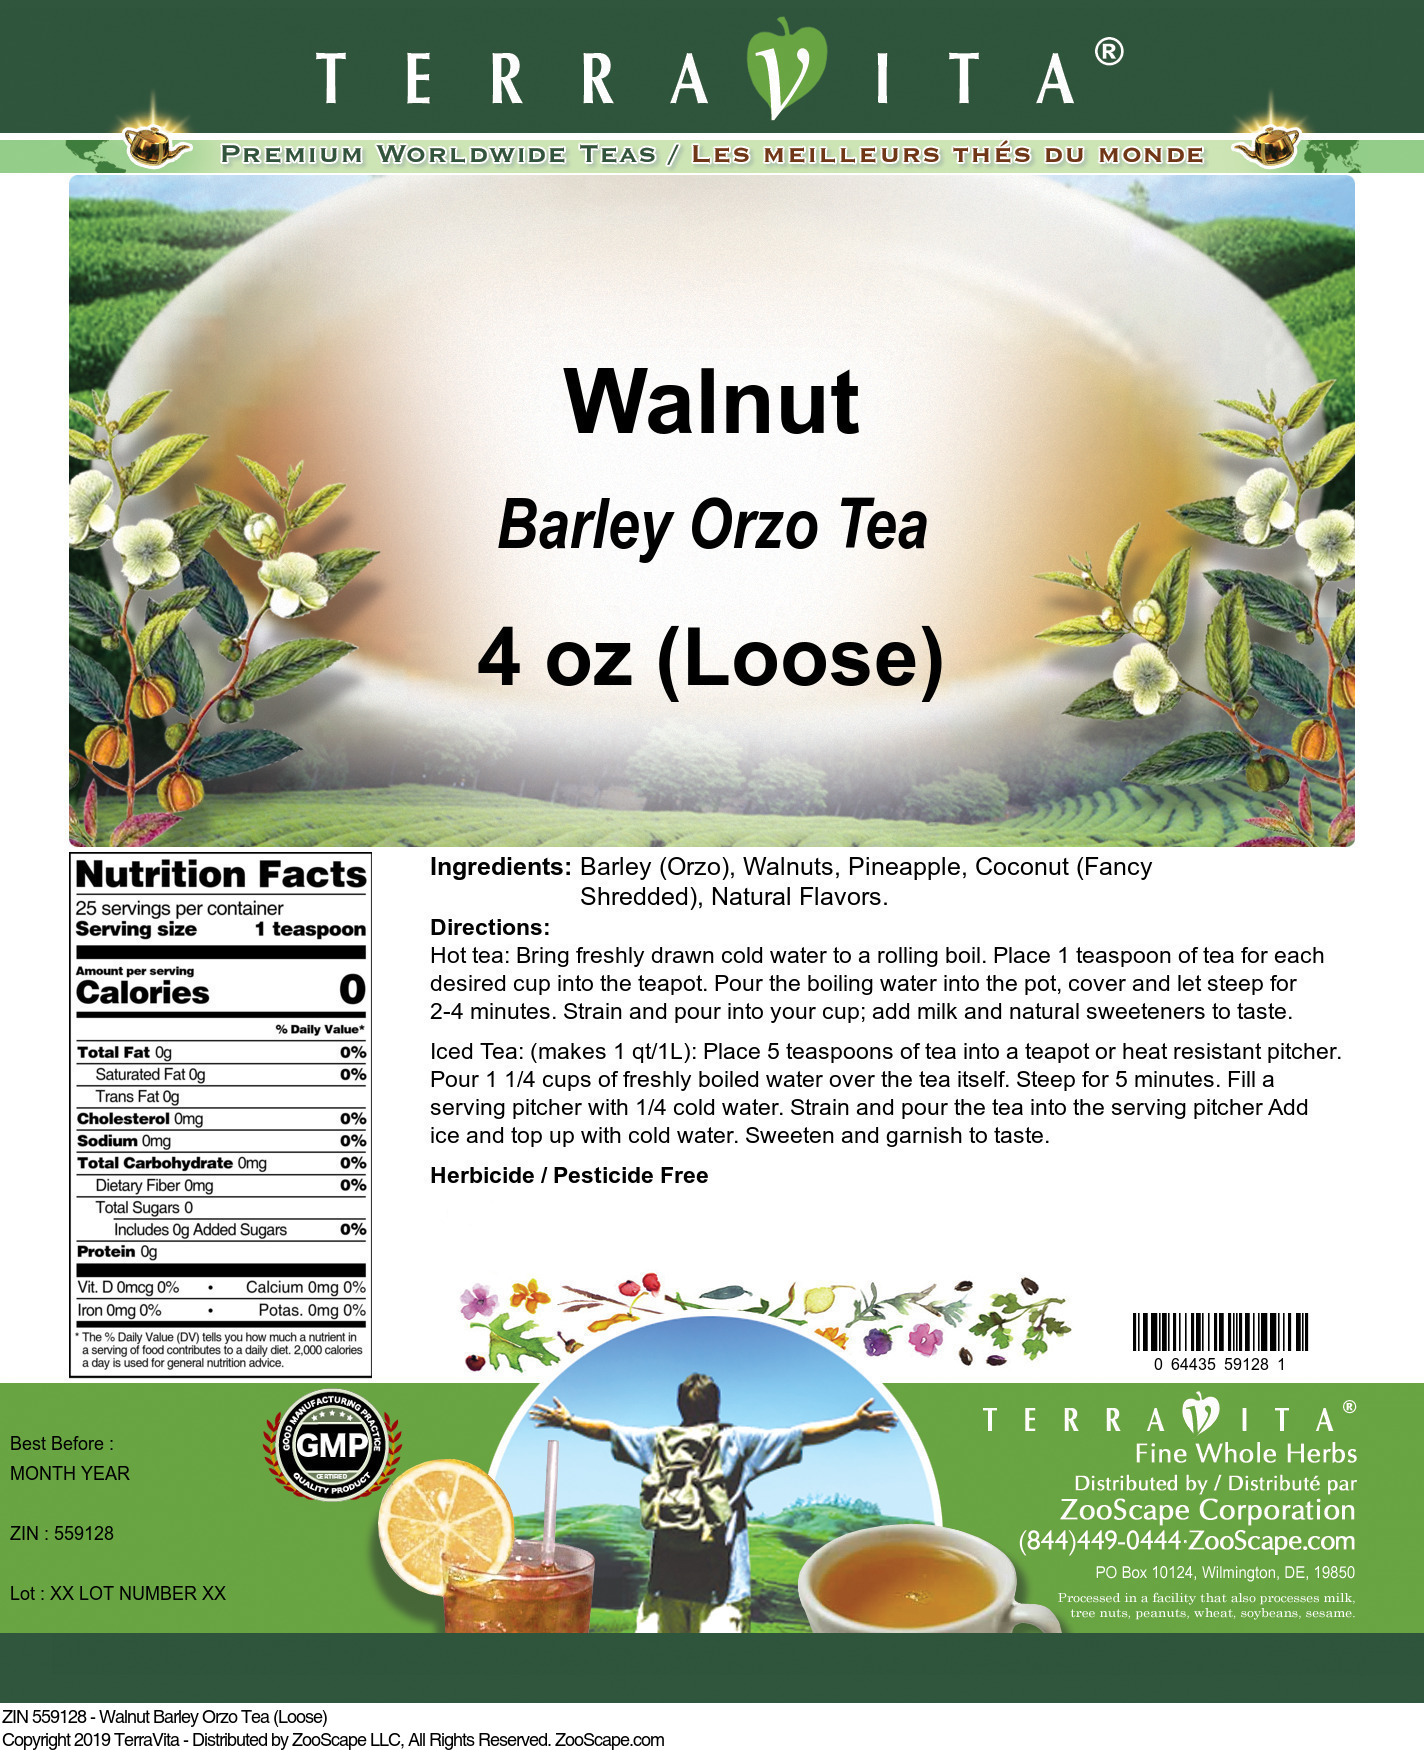 Walnut Barley Orzo Tea (Loose) - Label